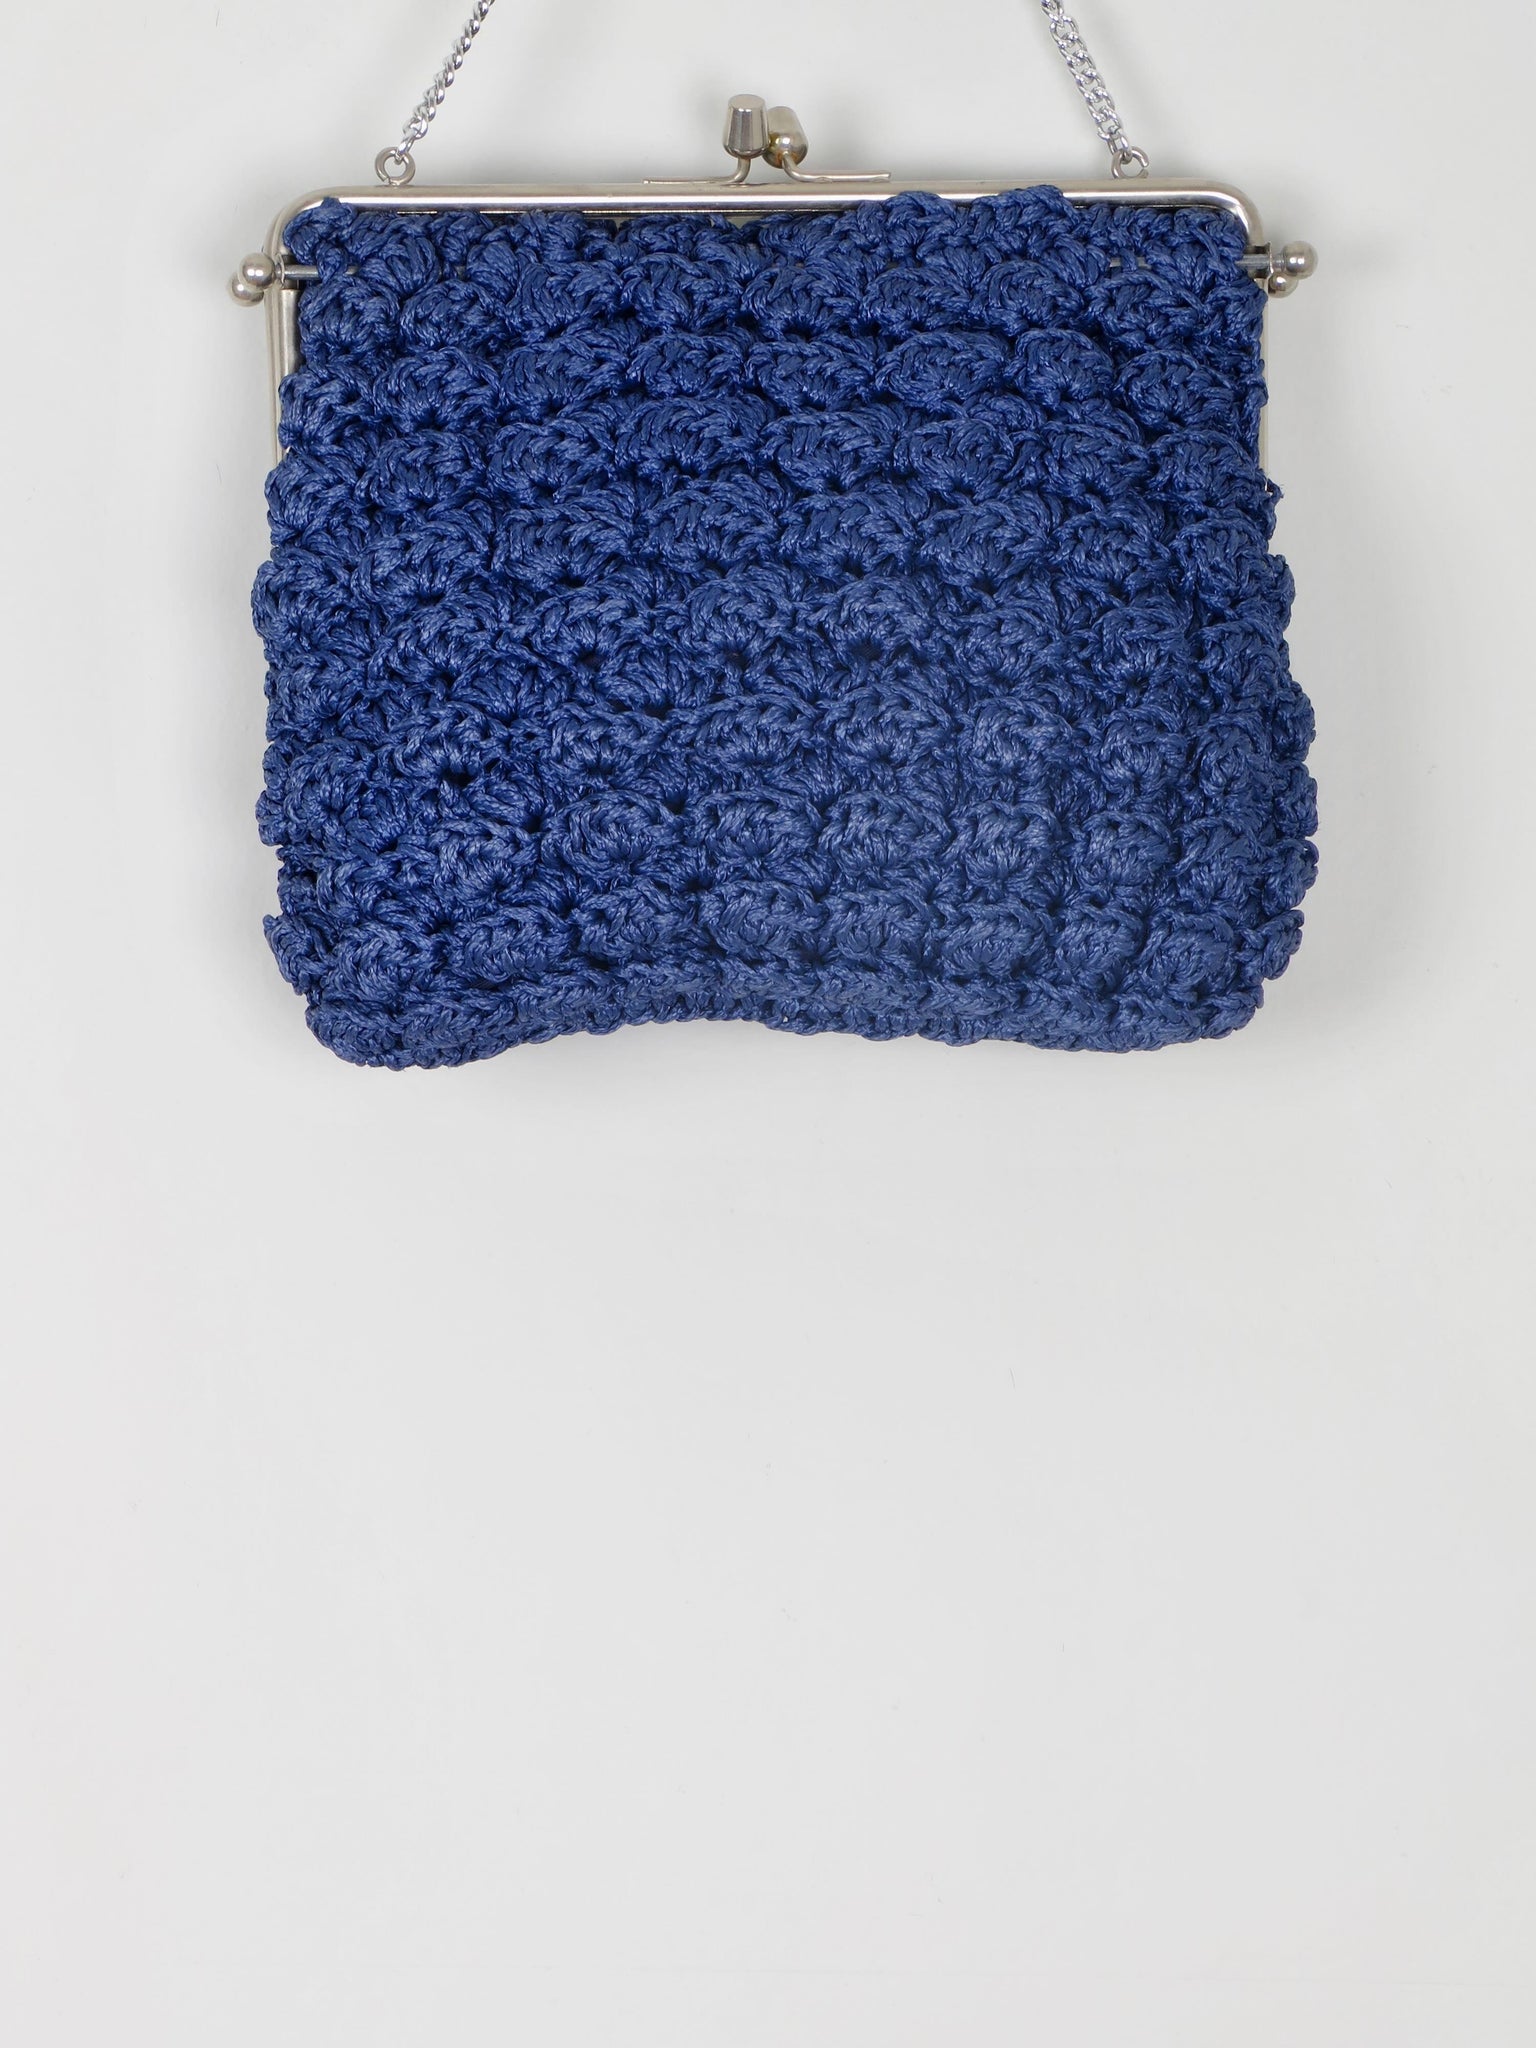 Vintage Navy Crochet Handbag - The Harlequin